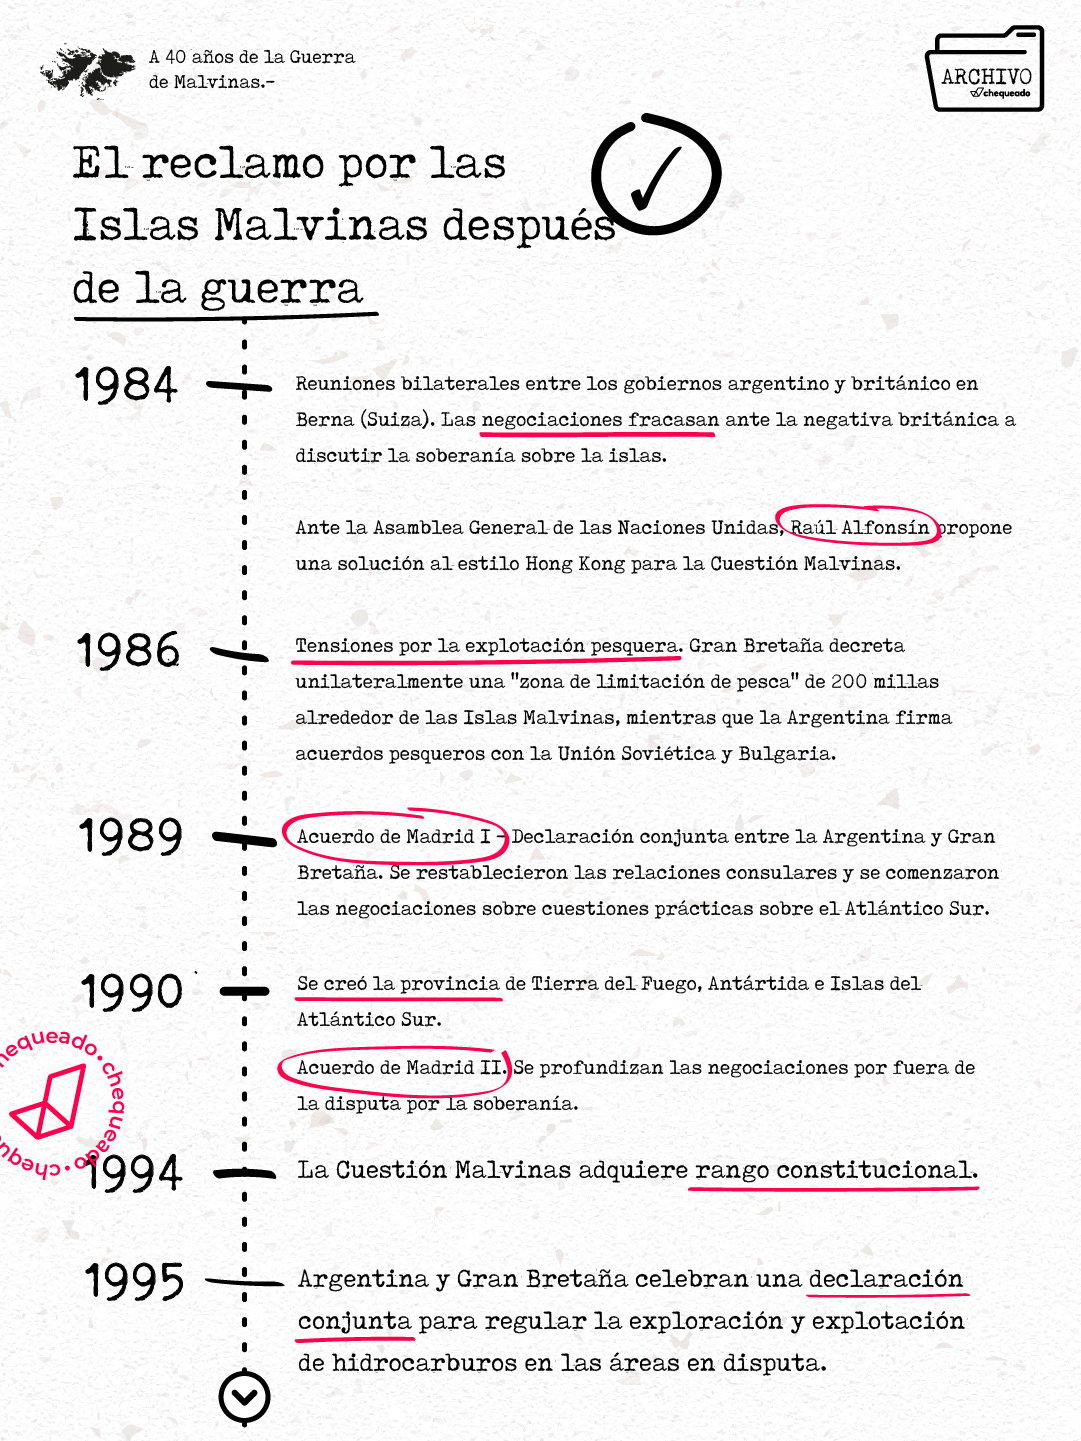 Después de la Guerra de Malvinas: cómo continuó el reclamo diplomático argentino a través de los gobiernos